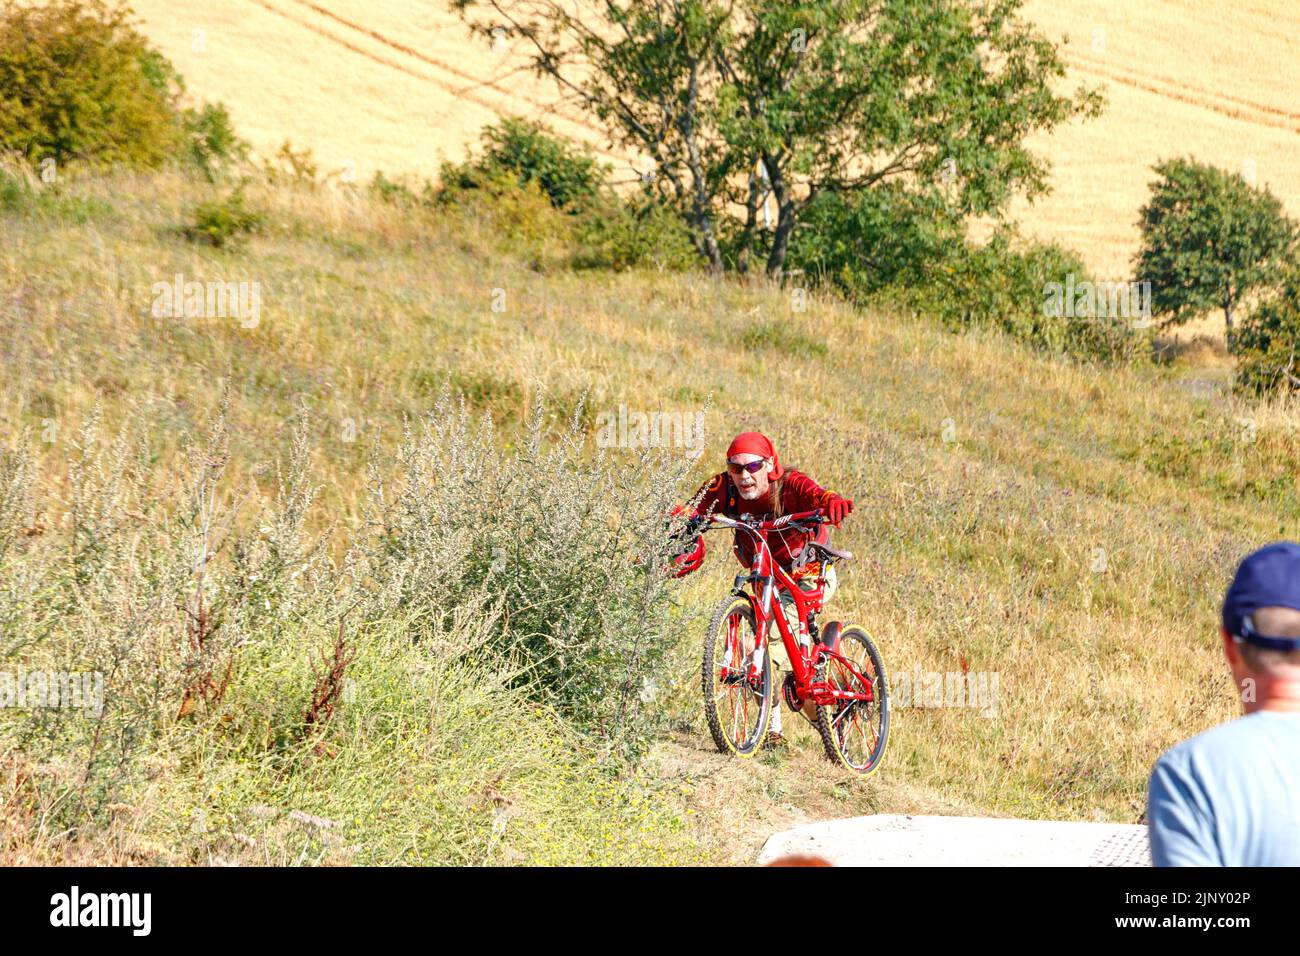 Mann in rot gekleidet schieben roten Mountainbike steilen Pfad Landschaft penshaw Denkmal Co durham Wearside Stockfoto